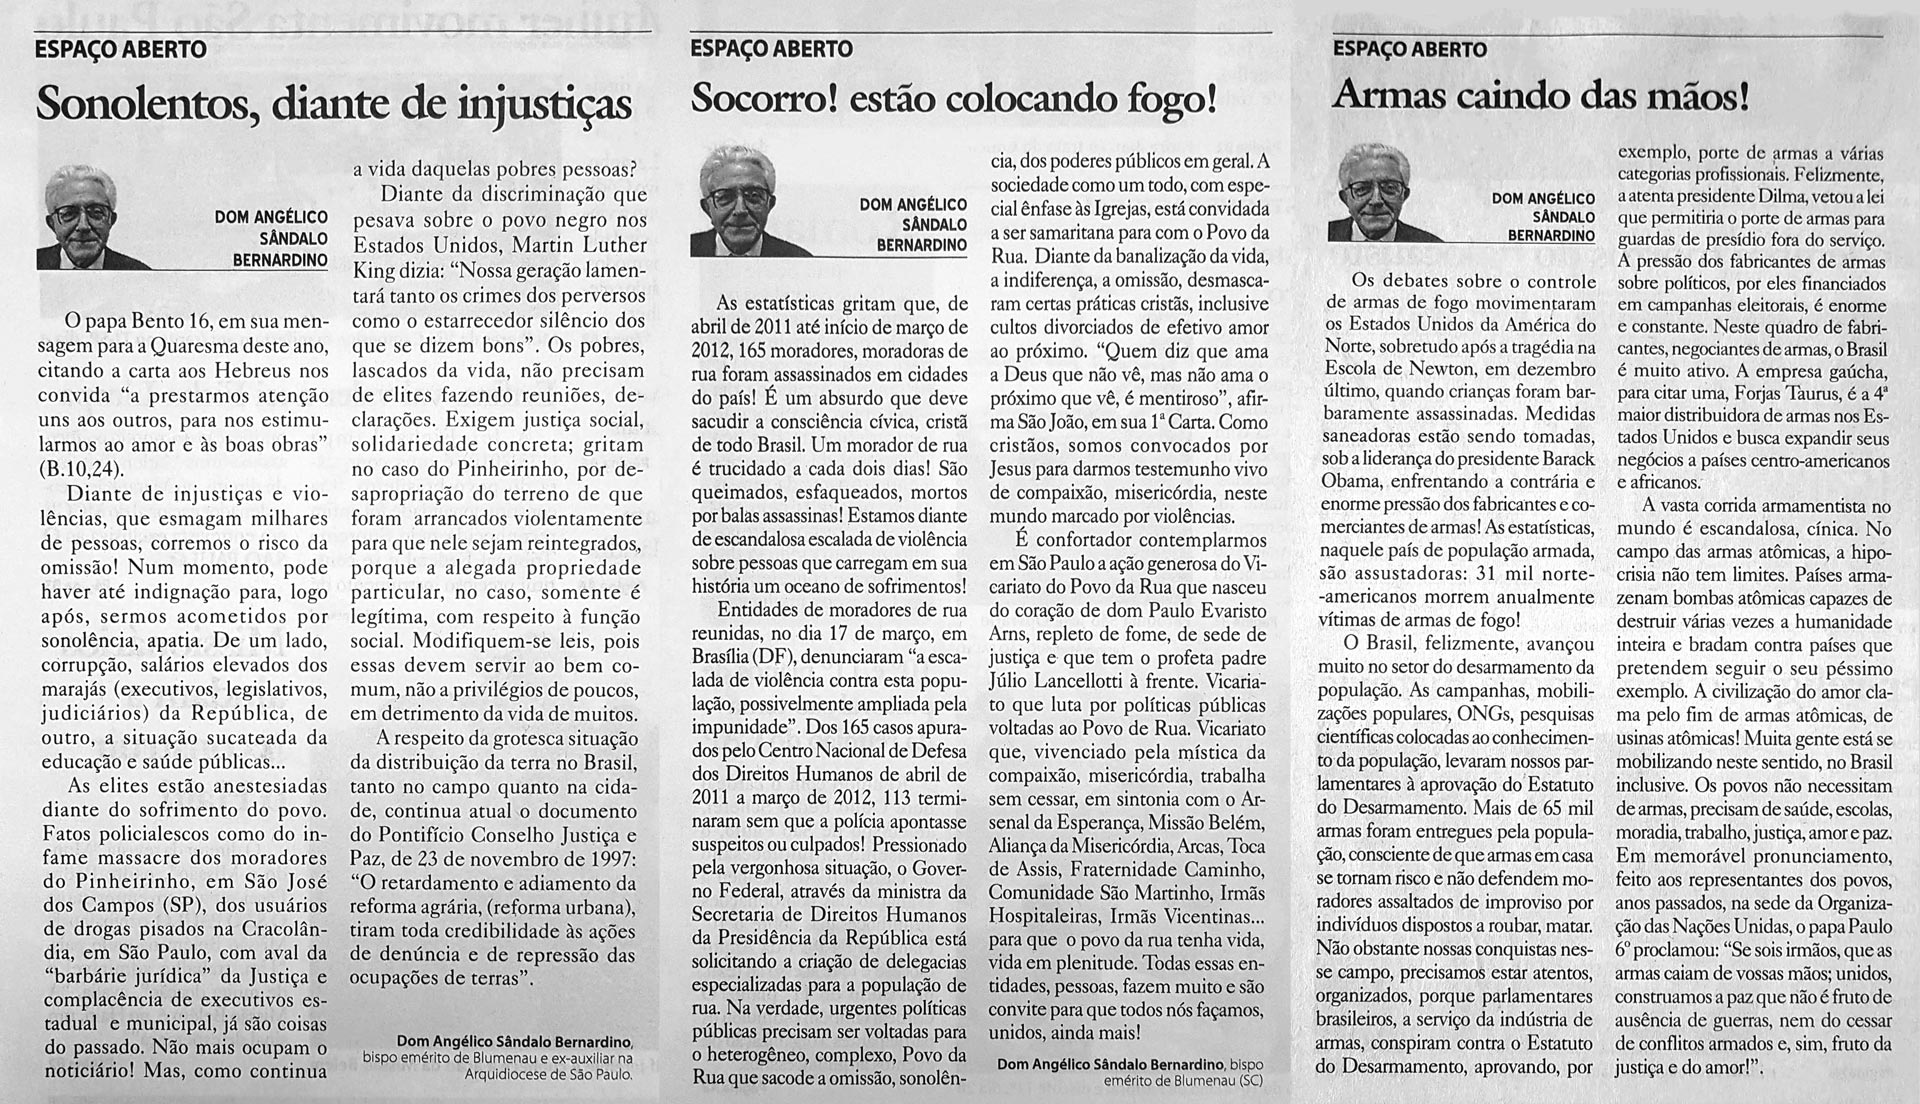 Editoriais do jornal O São Paulo - 2012 e 2013